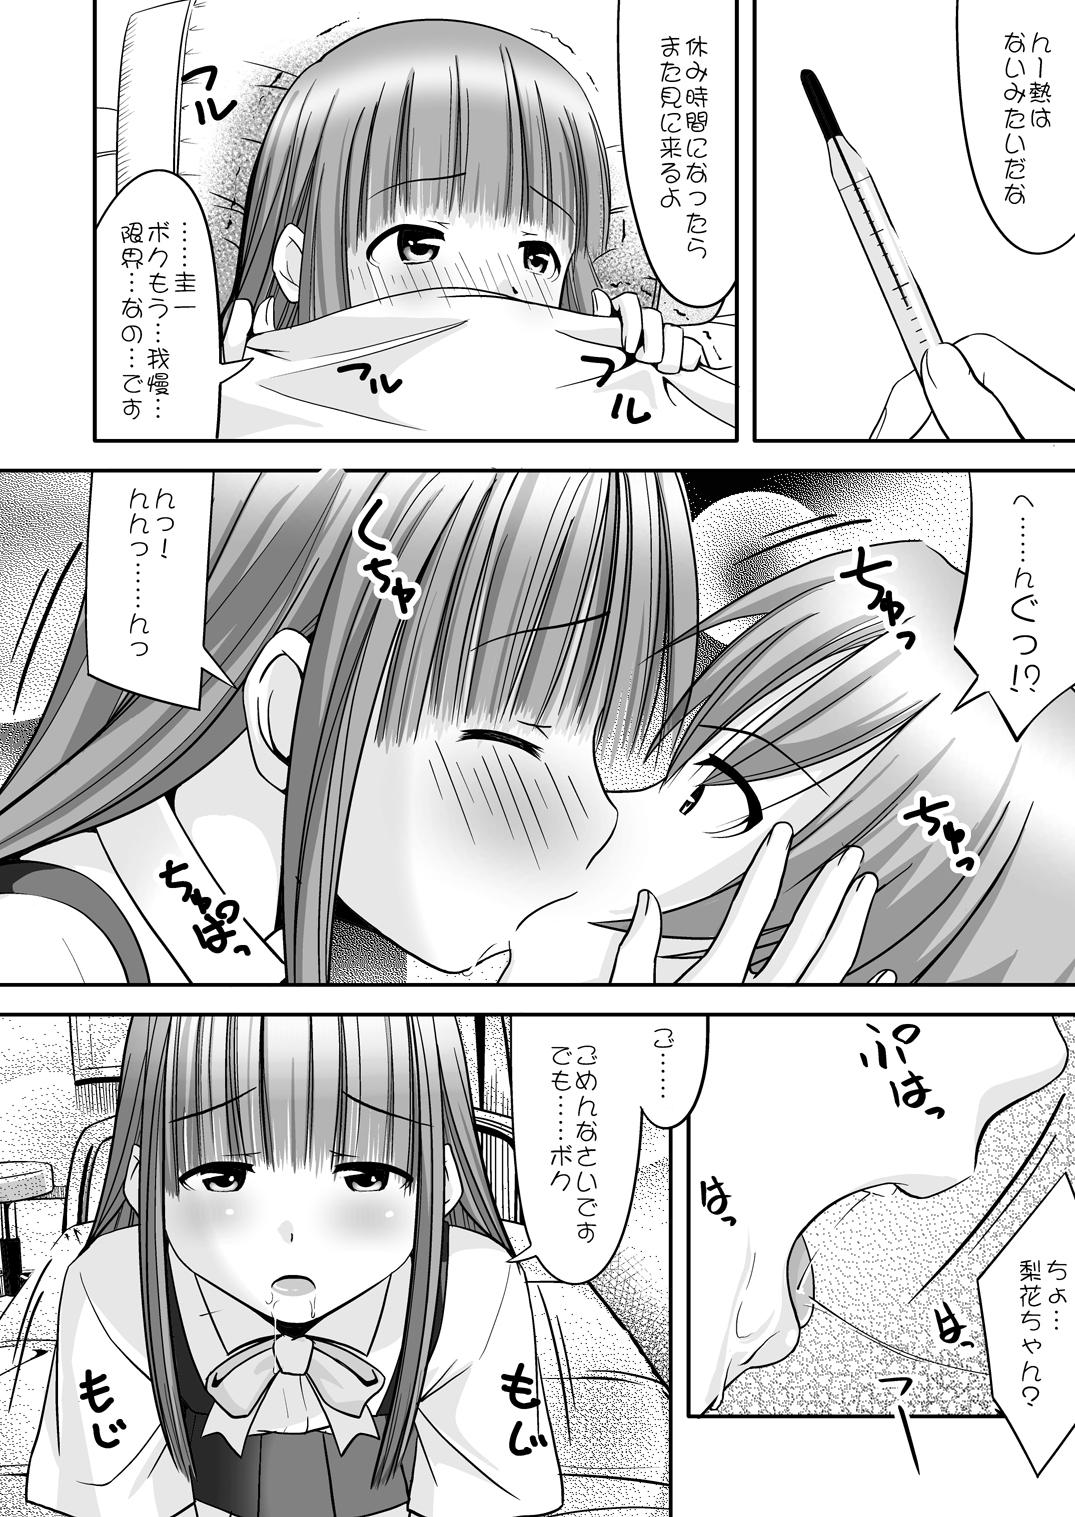 Kink Rika-chama!? - Higurashi no naku koro ni Shemale Sex - Page 11